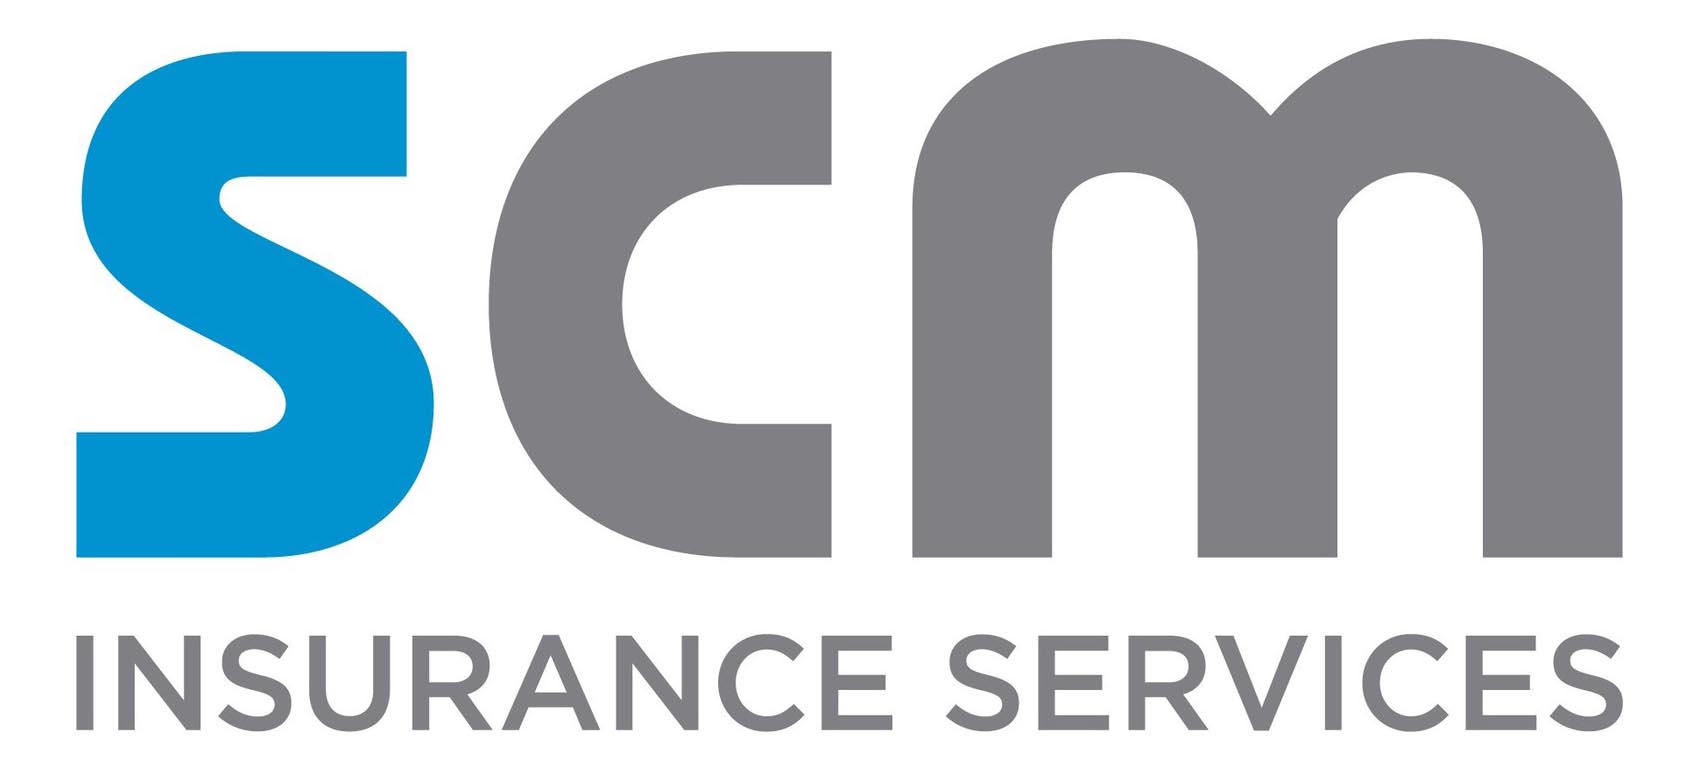 SCM Insurance Services